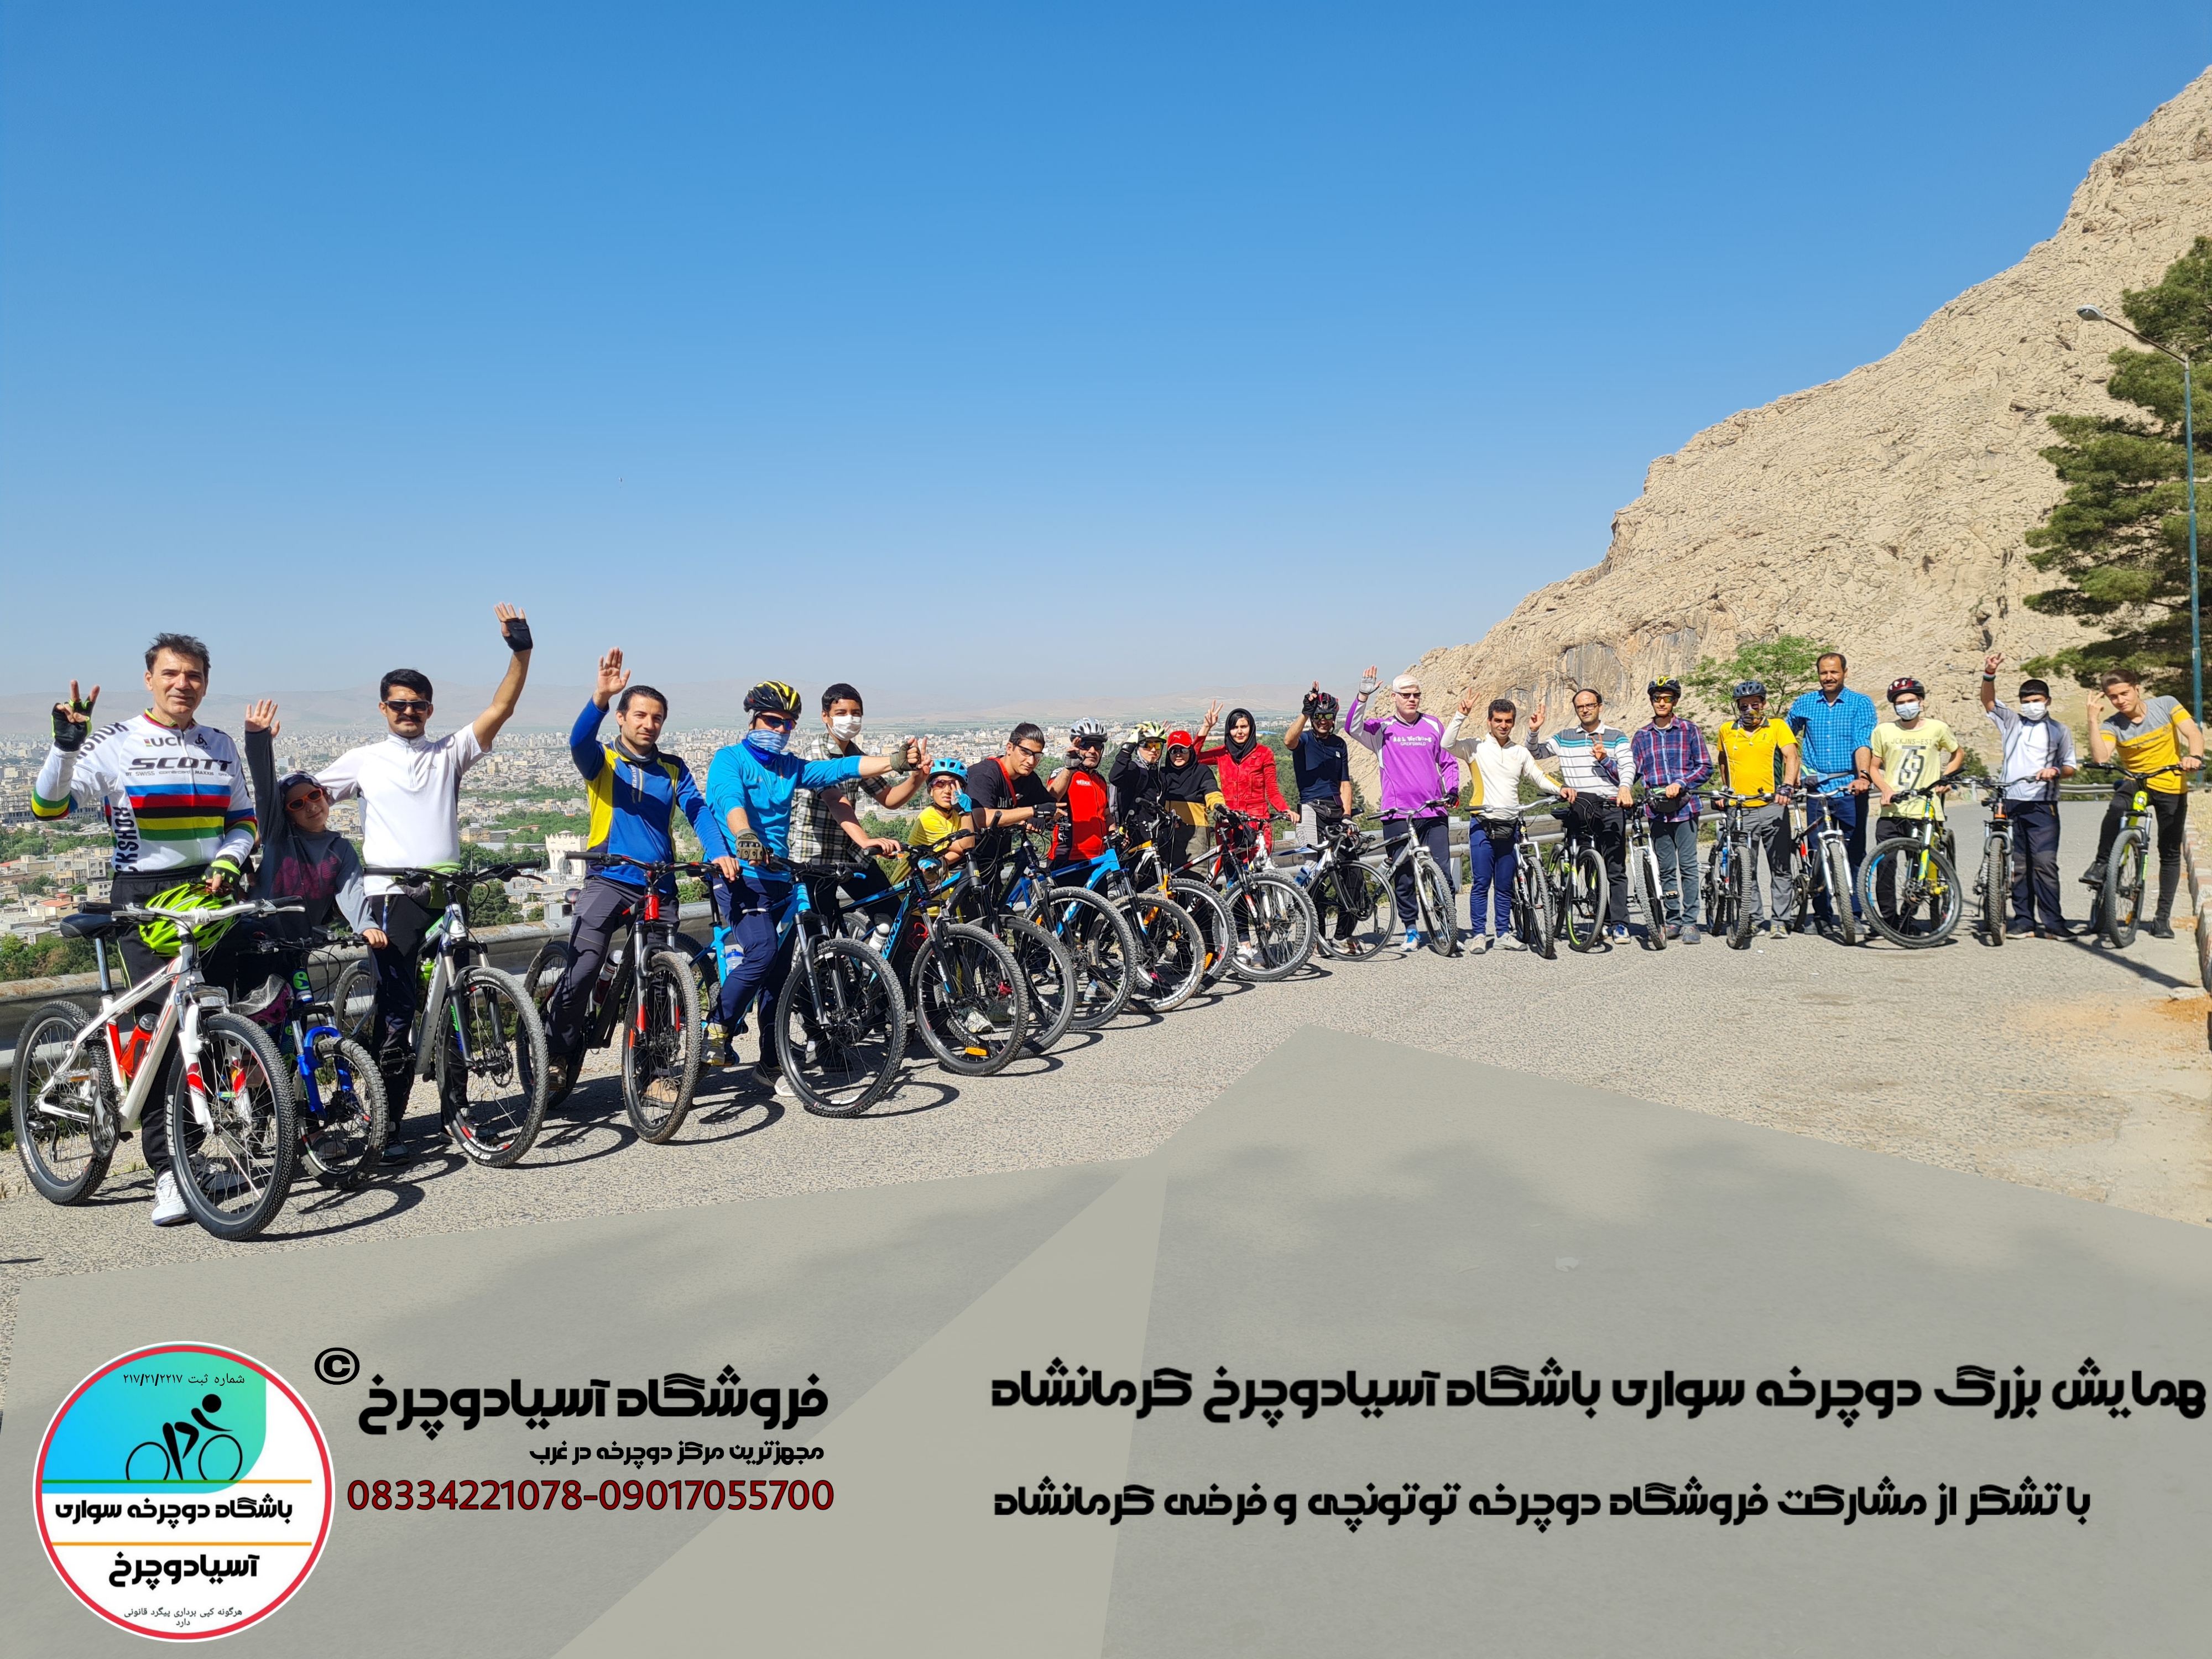 همایش بزرگ دوچرخه سواری آسیادوچرخ کرمانشاه 09017055700